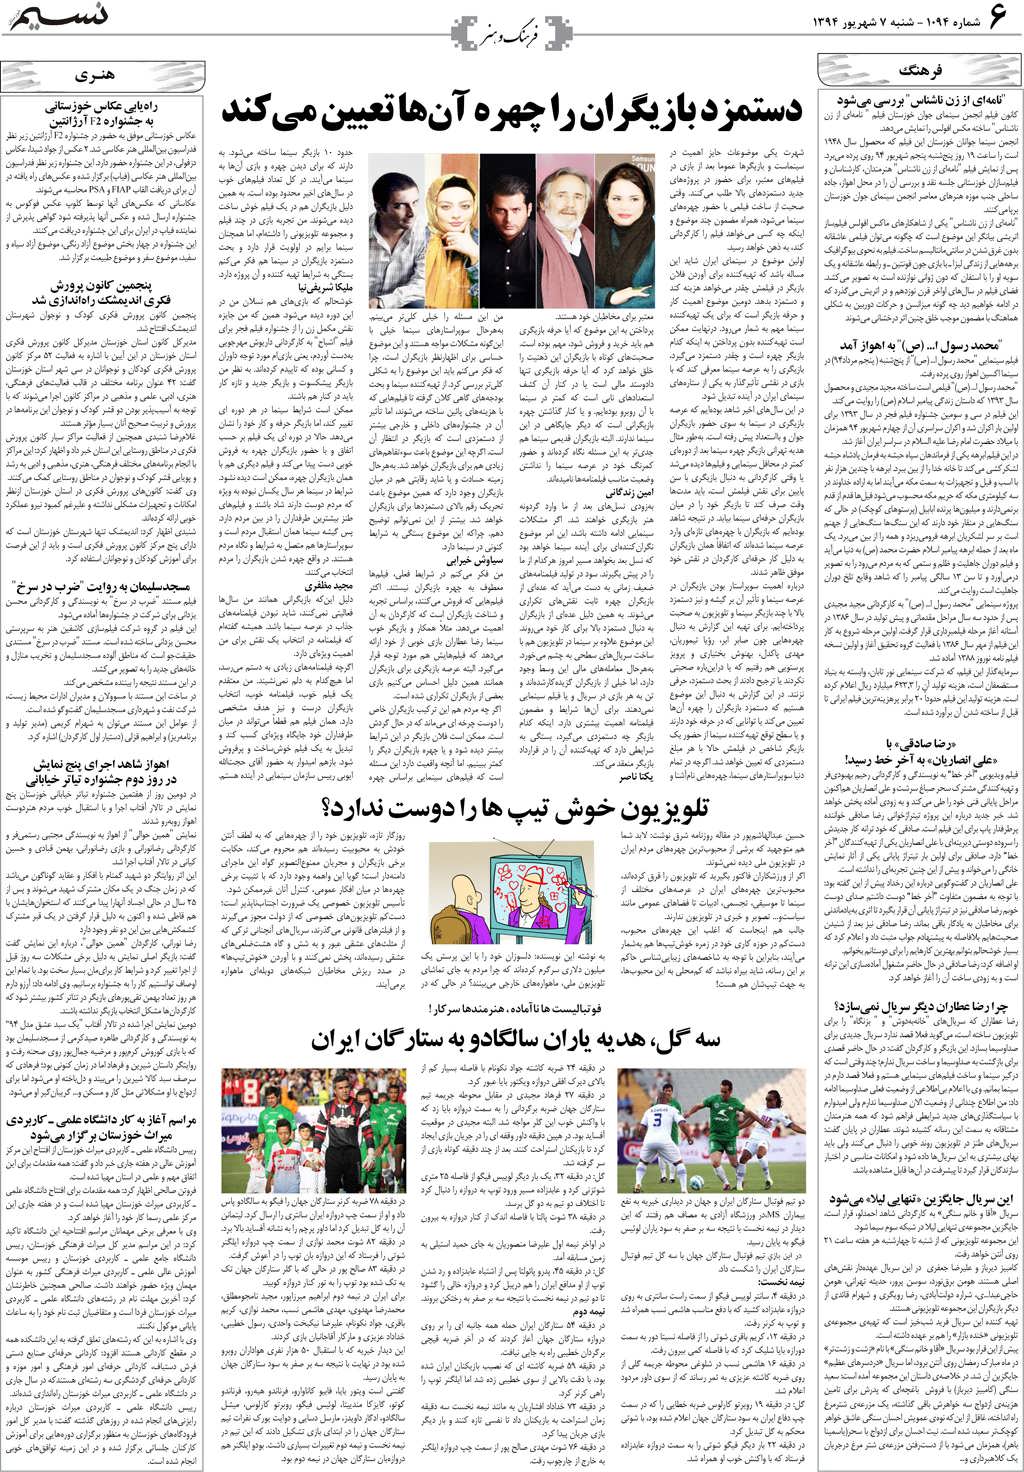 صفحه فرهنگ و هنر روزنامه نسیم شماره 1094